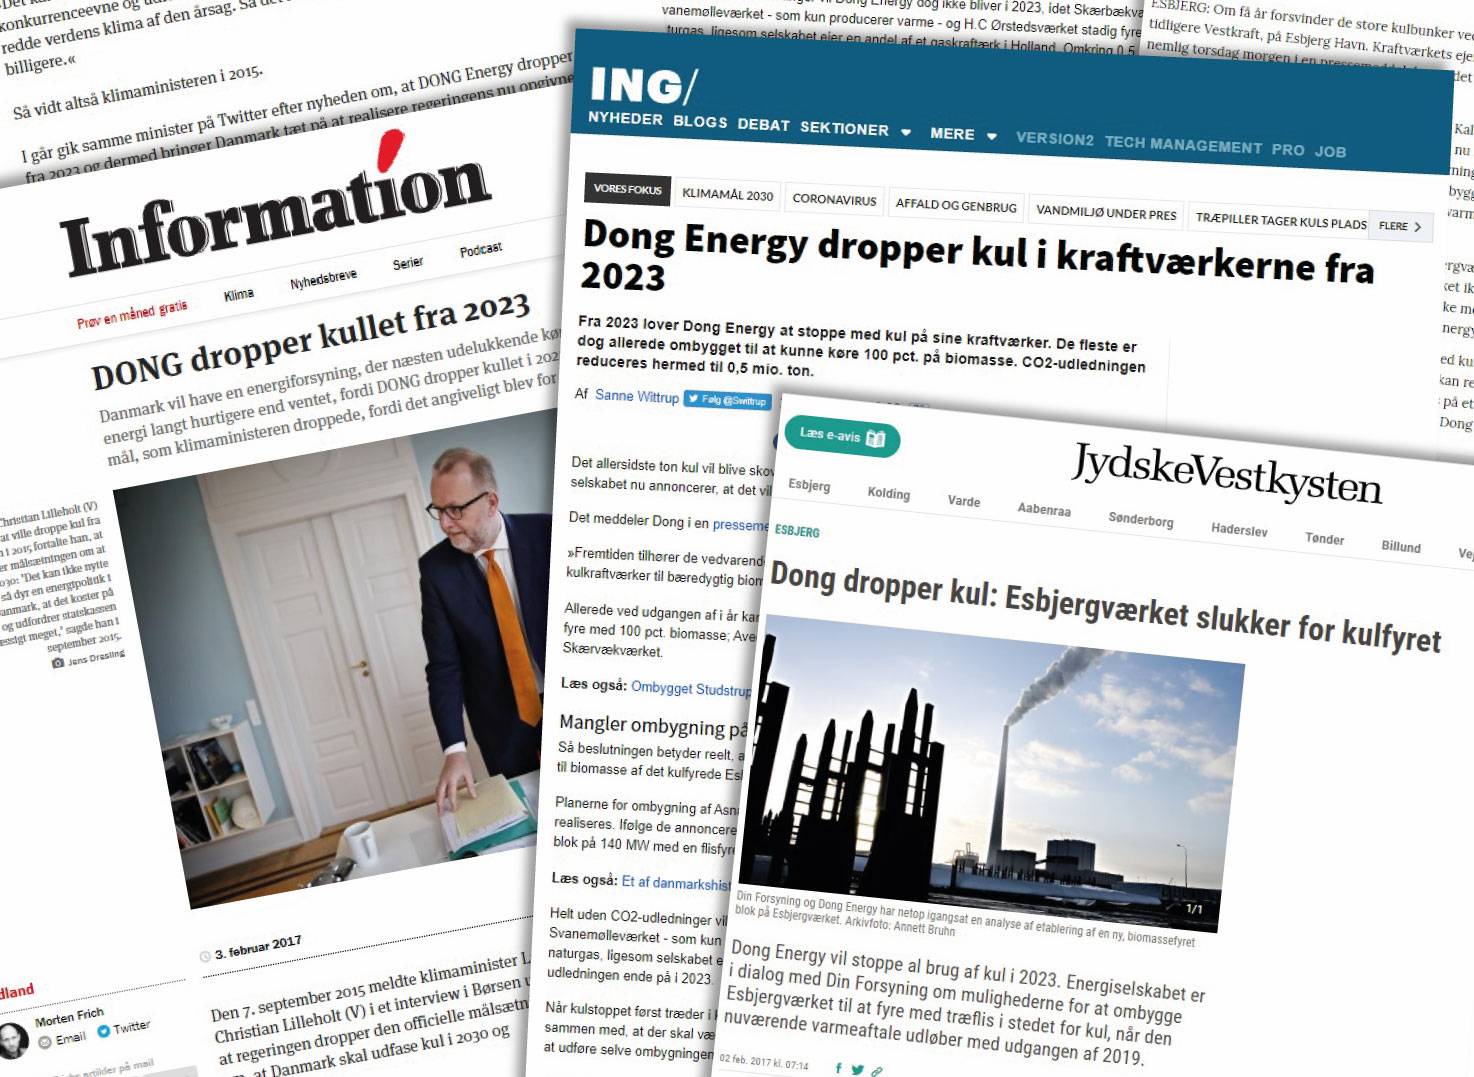 Collage af artikler om Dong Energy (nu Ørsted) ambitiøse plan om at udfase kul